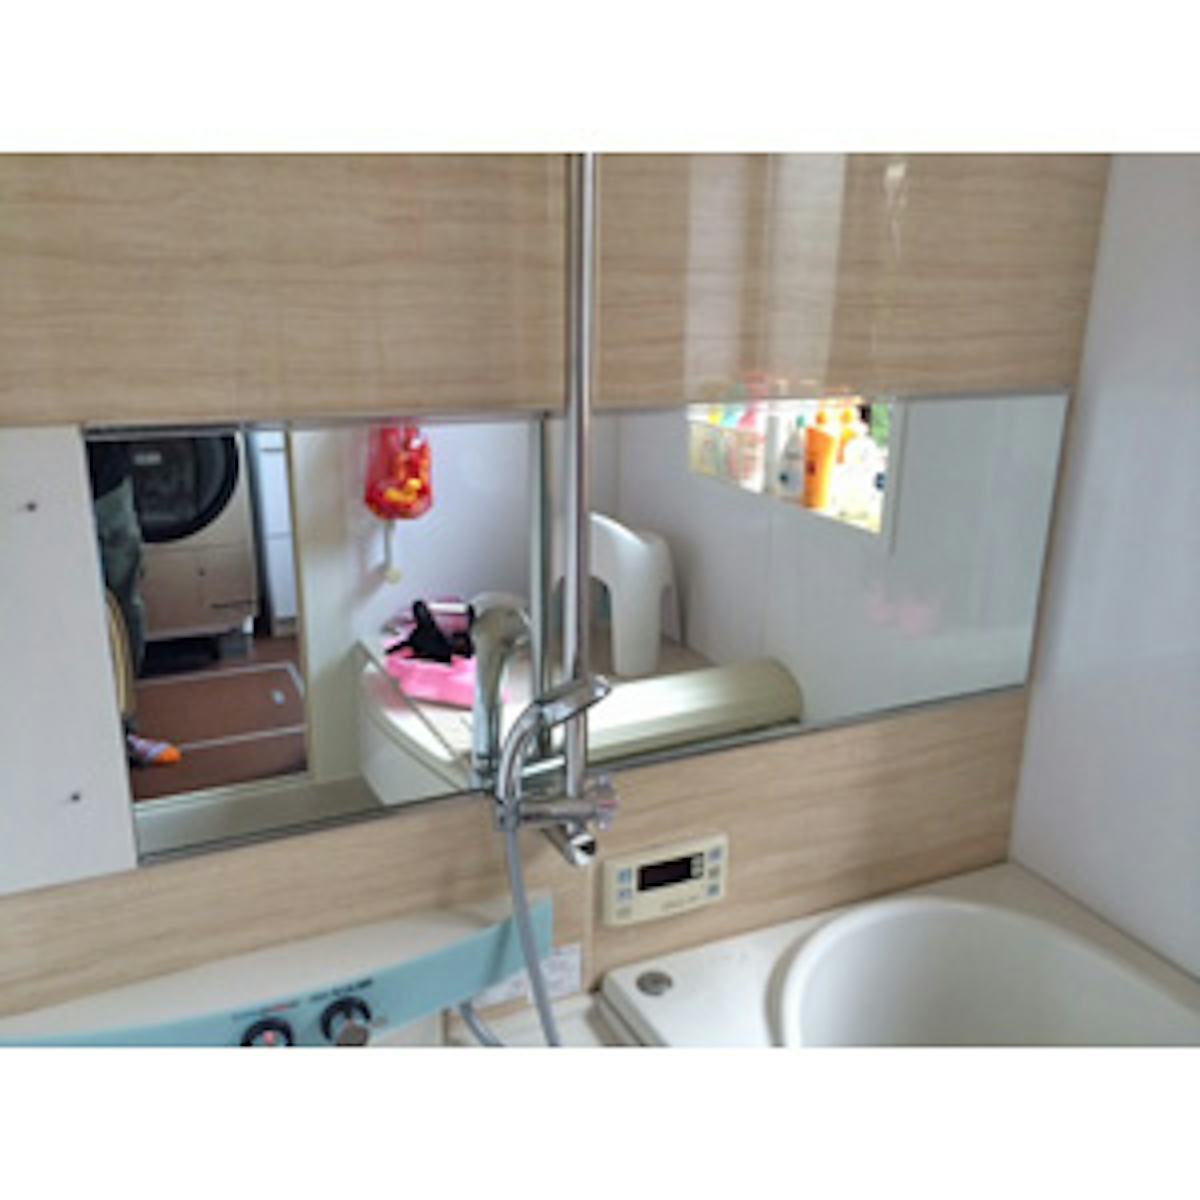 鏡の取り付け・交換の施工出張の事例 - 浴室用の鏡(防湿ミラー)(I様)